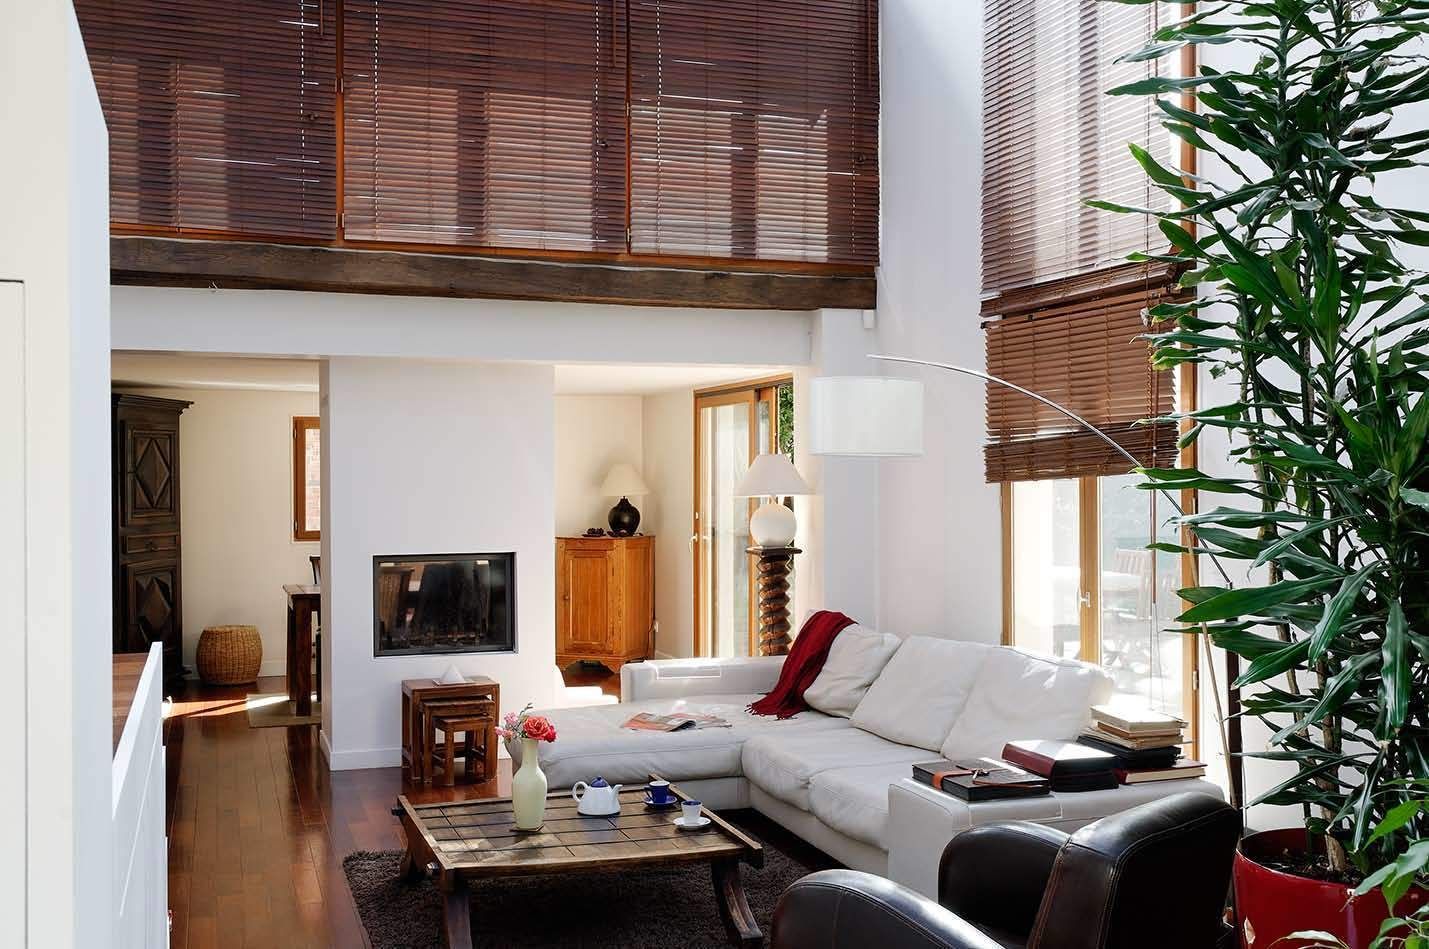 Réfection complète d’une maison à Colombes + extension, 170m² , ATELIER FB ATELIER FB Modern living room